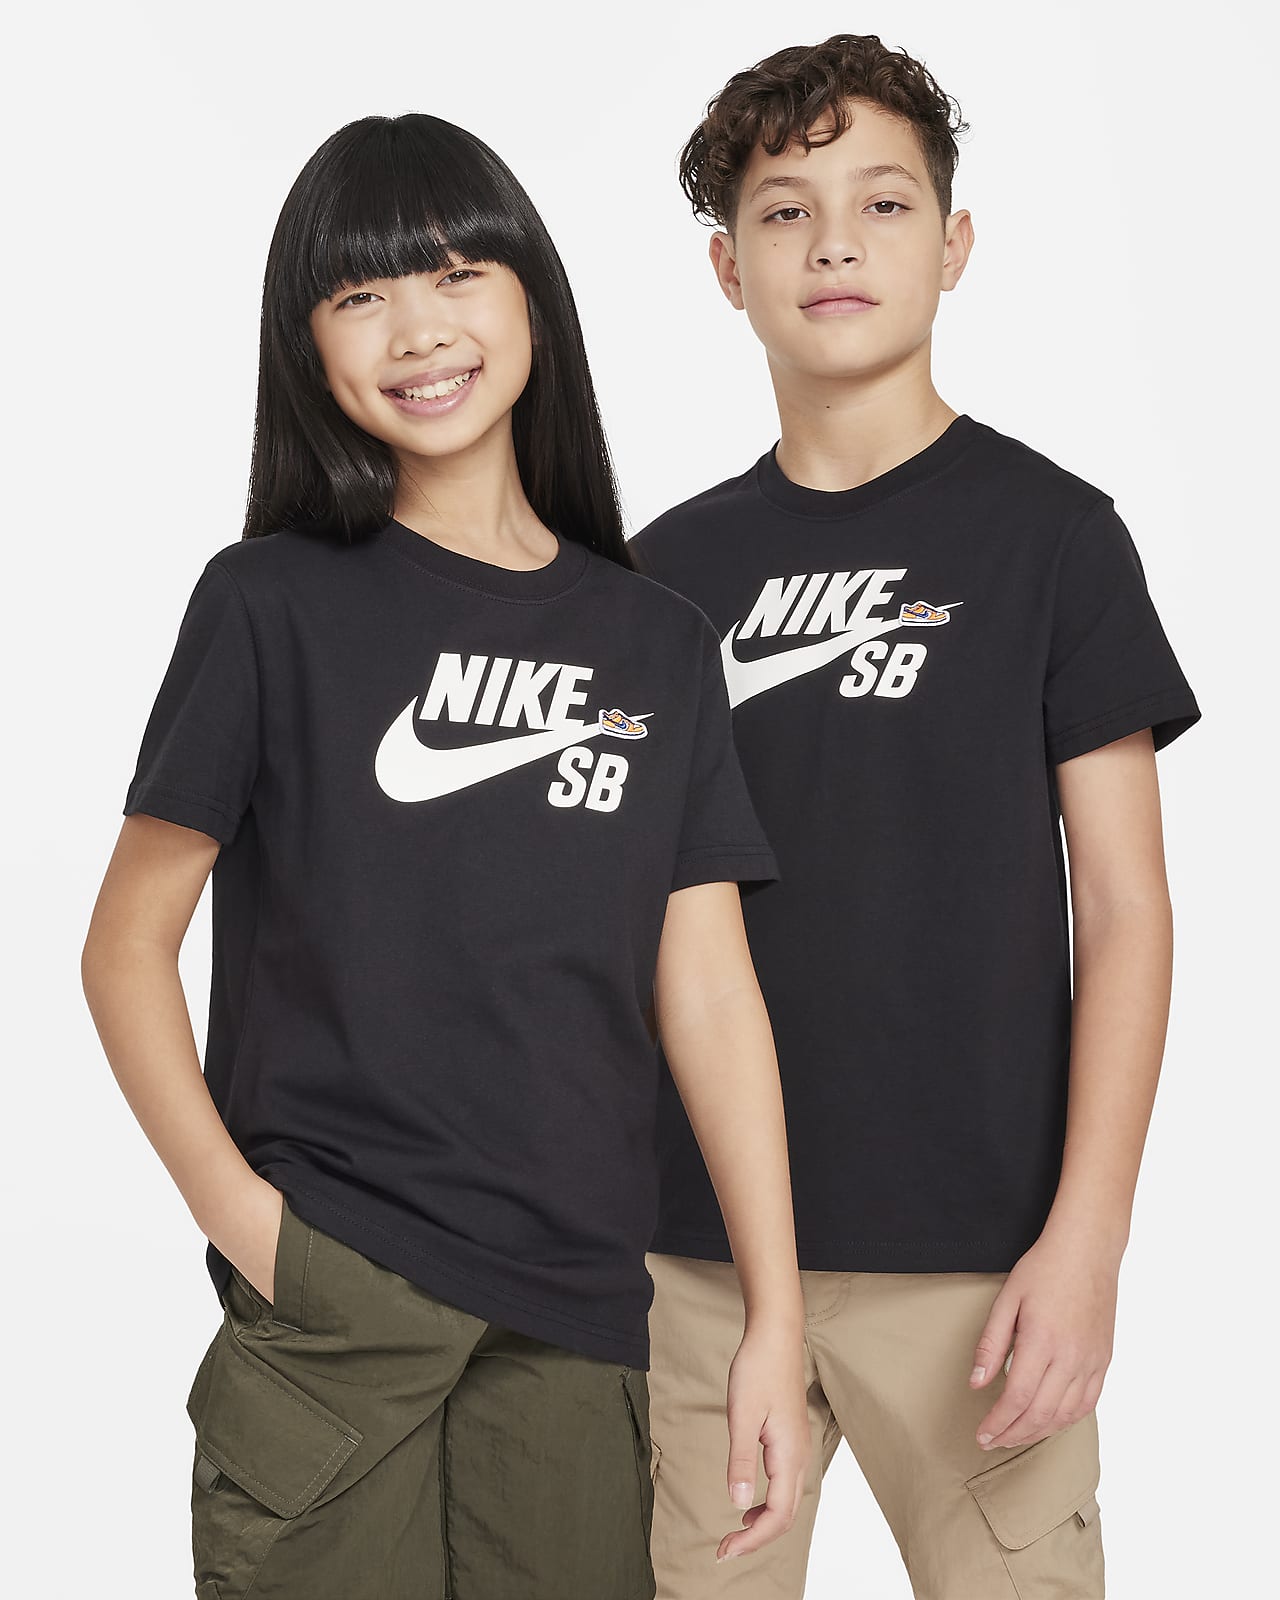 Nike SB Samarreta - Nen/a